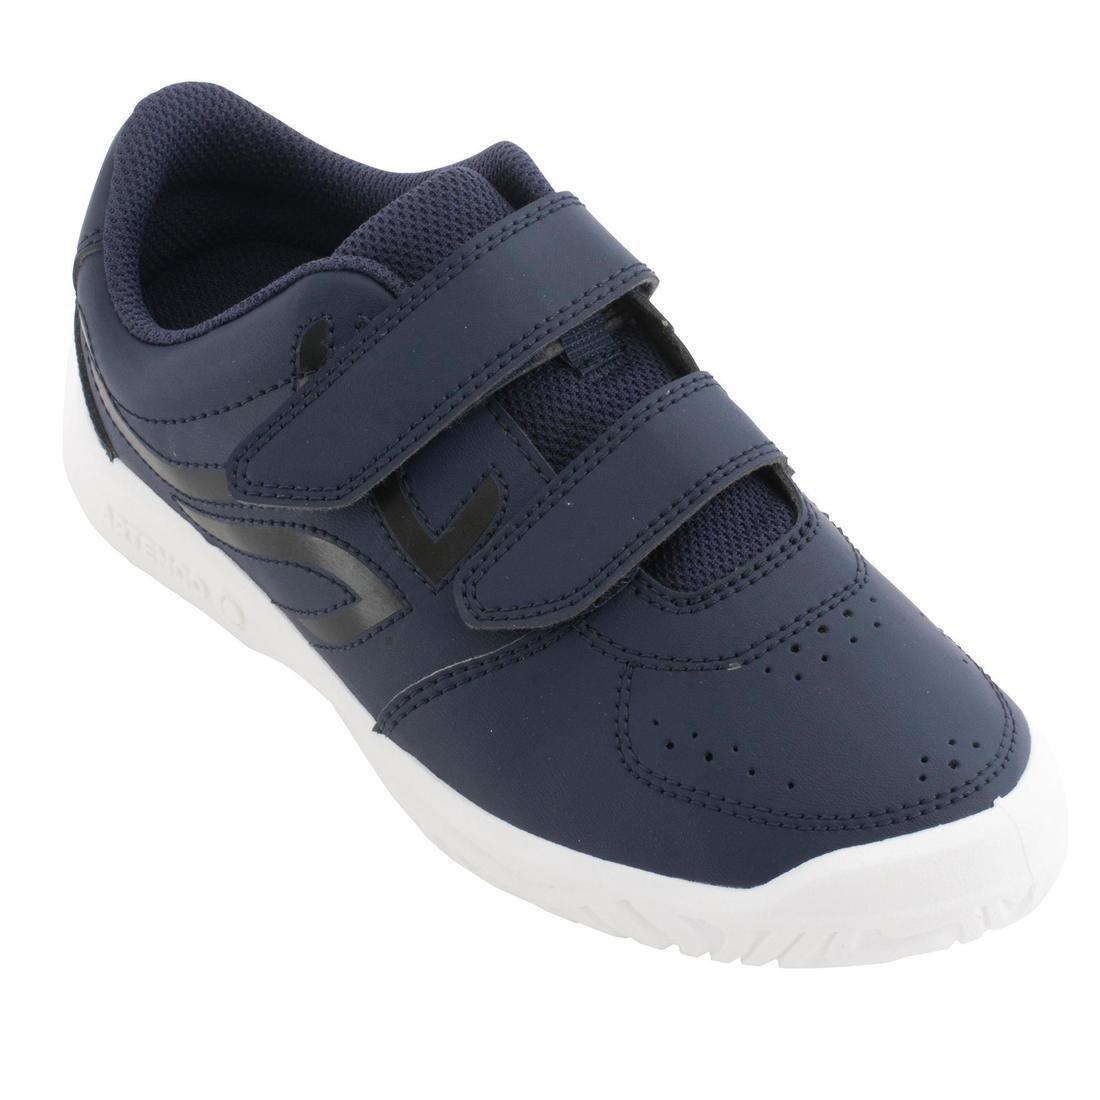 DECATHLON - Ts100 GripKids Tennis Shoes, Navy Blue